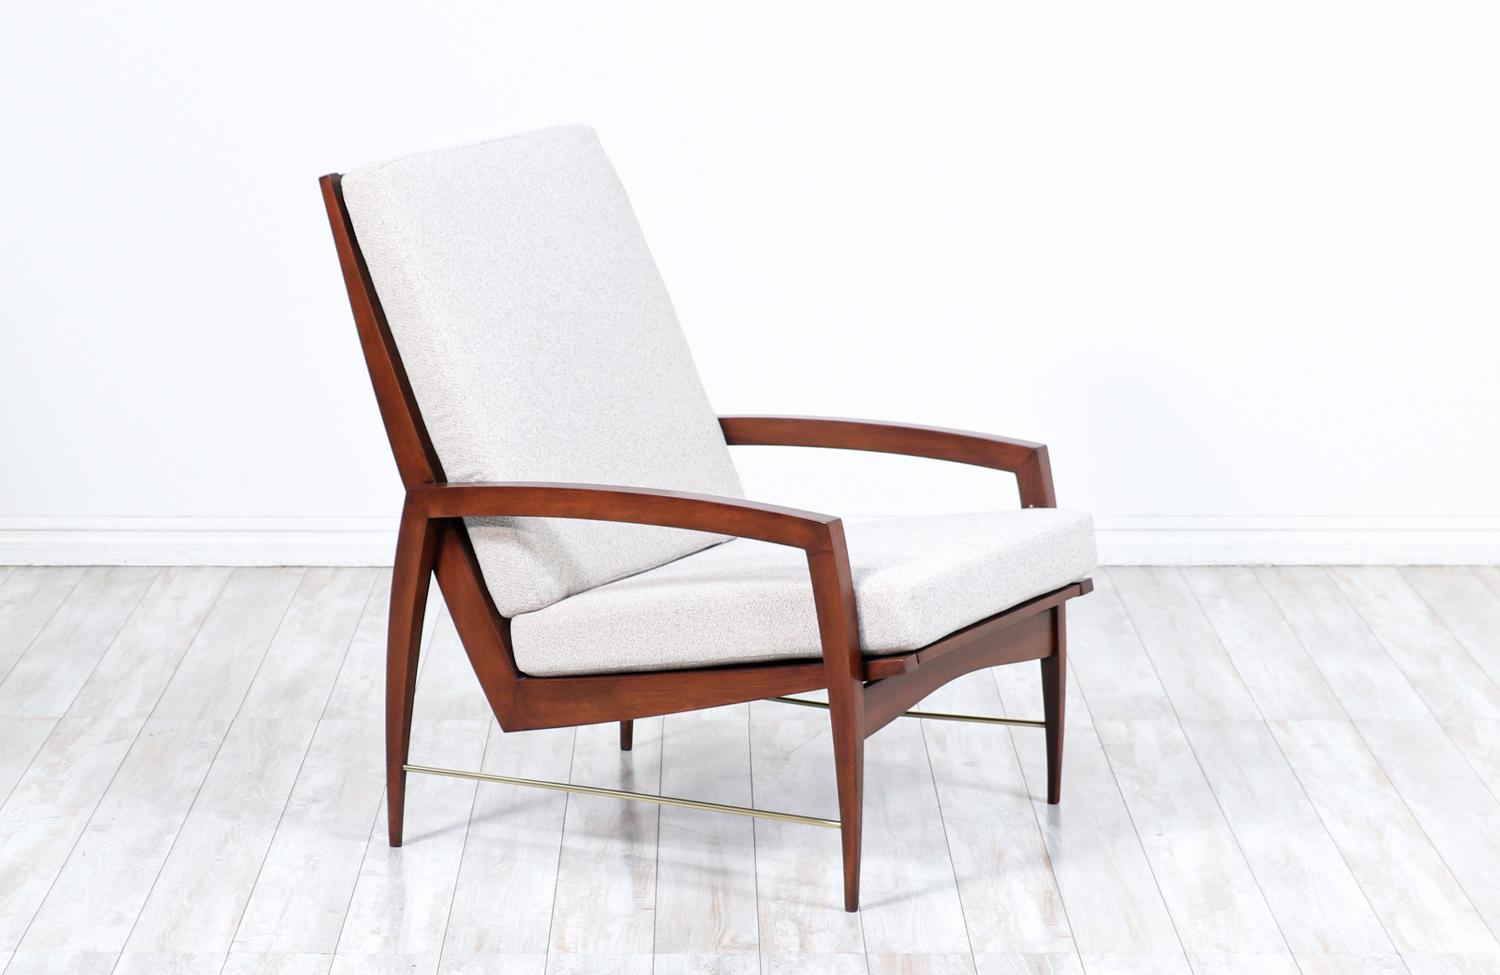 Chaise longue à dossier haut conçue par Dan Johnson pour Selig et fabriquée au Danemark vers les années 1950. Doté d'un cadre en bois de hêtre teinté noyer magnifiquement sculpté avec cinq lattes accentuant le haut dossier avec des pieds et des